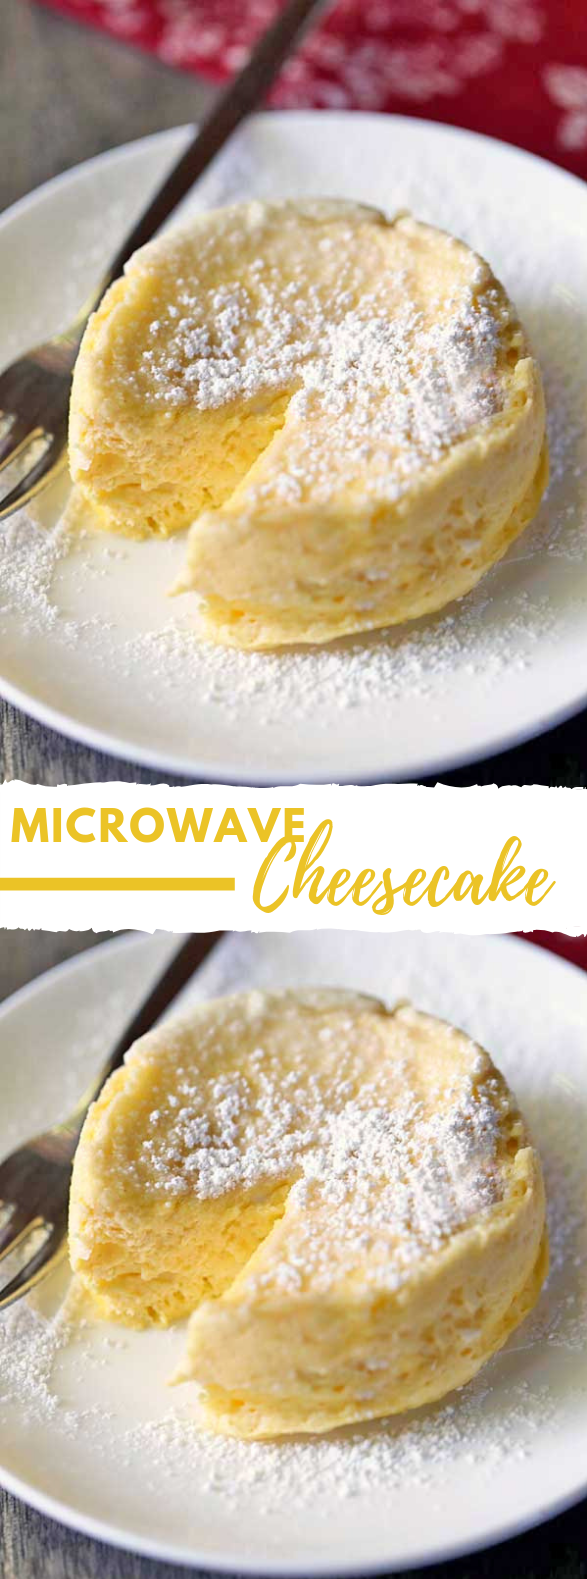 Microwave Cheesecake #healthydesserts #dietfood